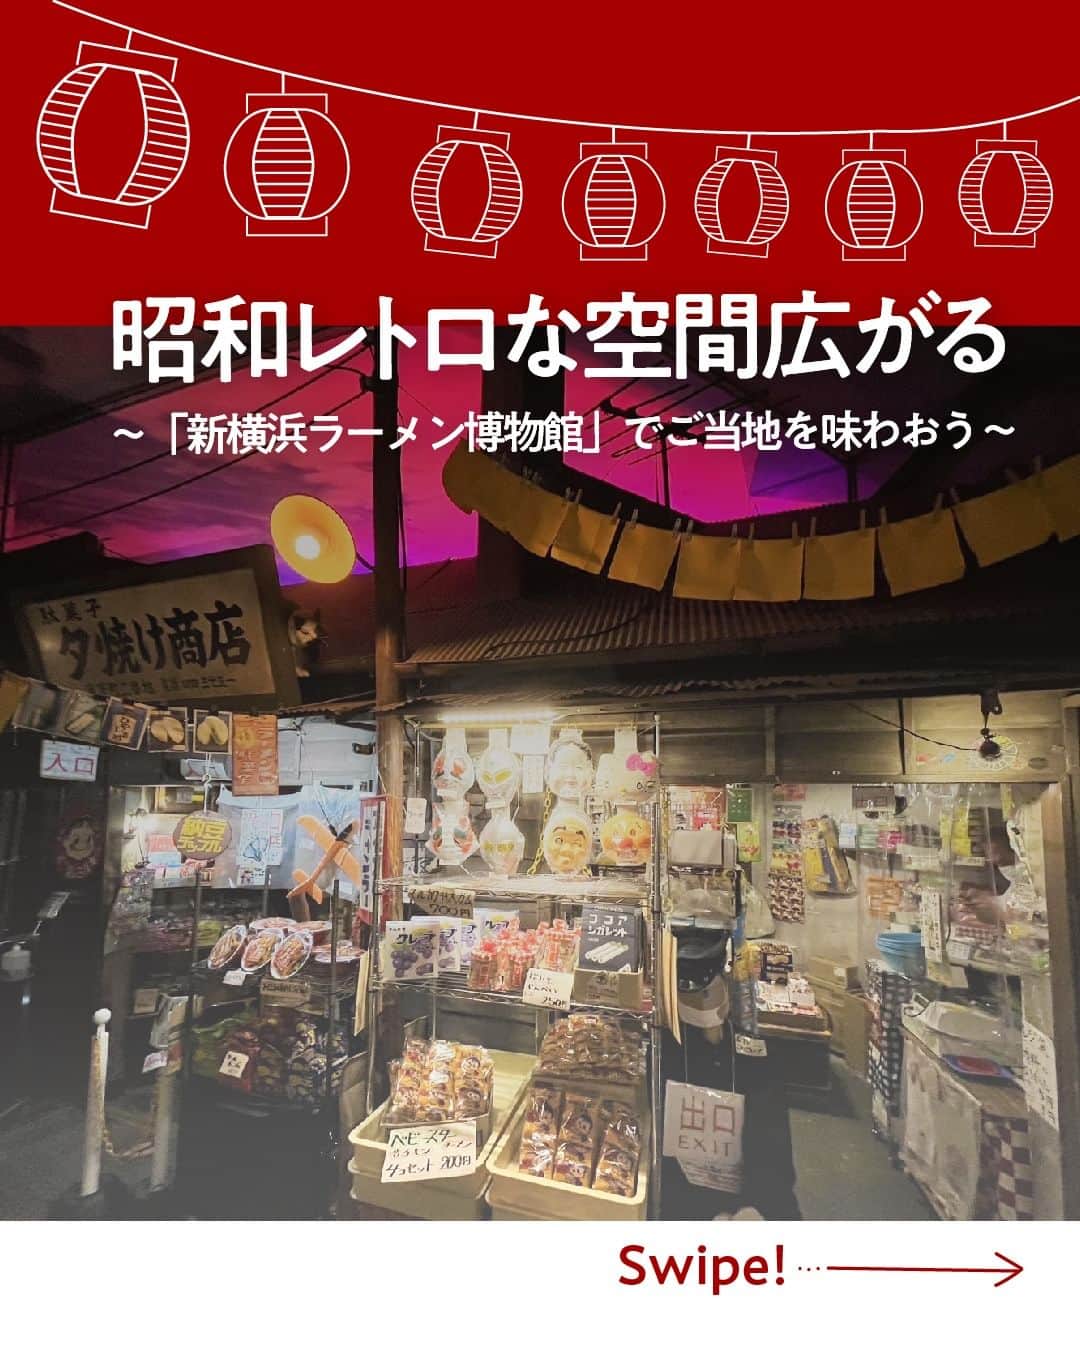 現地発信の旅行サイト「たびらい」のインスタグラム：「今回は「新横浜ラーメン博物館」をご紹介！ 駅から徒歩5分という好立地で様々な体験が叶う、老若男女問わず楽しめる博物館です。 ラーメン好きにはもちろん、昭和レトロな雰囲気がお好きな方、家族のお出かけにも充実した一日が過ごせるおすすめスポット。 ぜひ一度訪れてみてください♪  ▼ほかの投稿はこちらから📷 @tabirai #新横浜ラーメン博物館 #ラーメン #博物館 #昭和レトロ #喫茶店 #体験 #横浜 #横浜観光 #神奈川観光 #横浜グルメ #神奈川グルメ  #たびらい #たびらいホテル #tabirai #たびらいレンタカー #tabirai_trip」